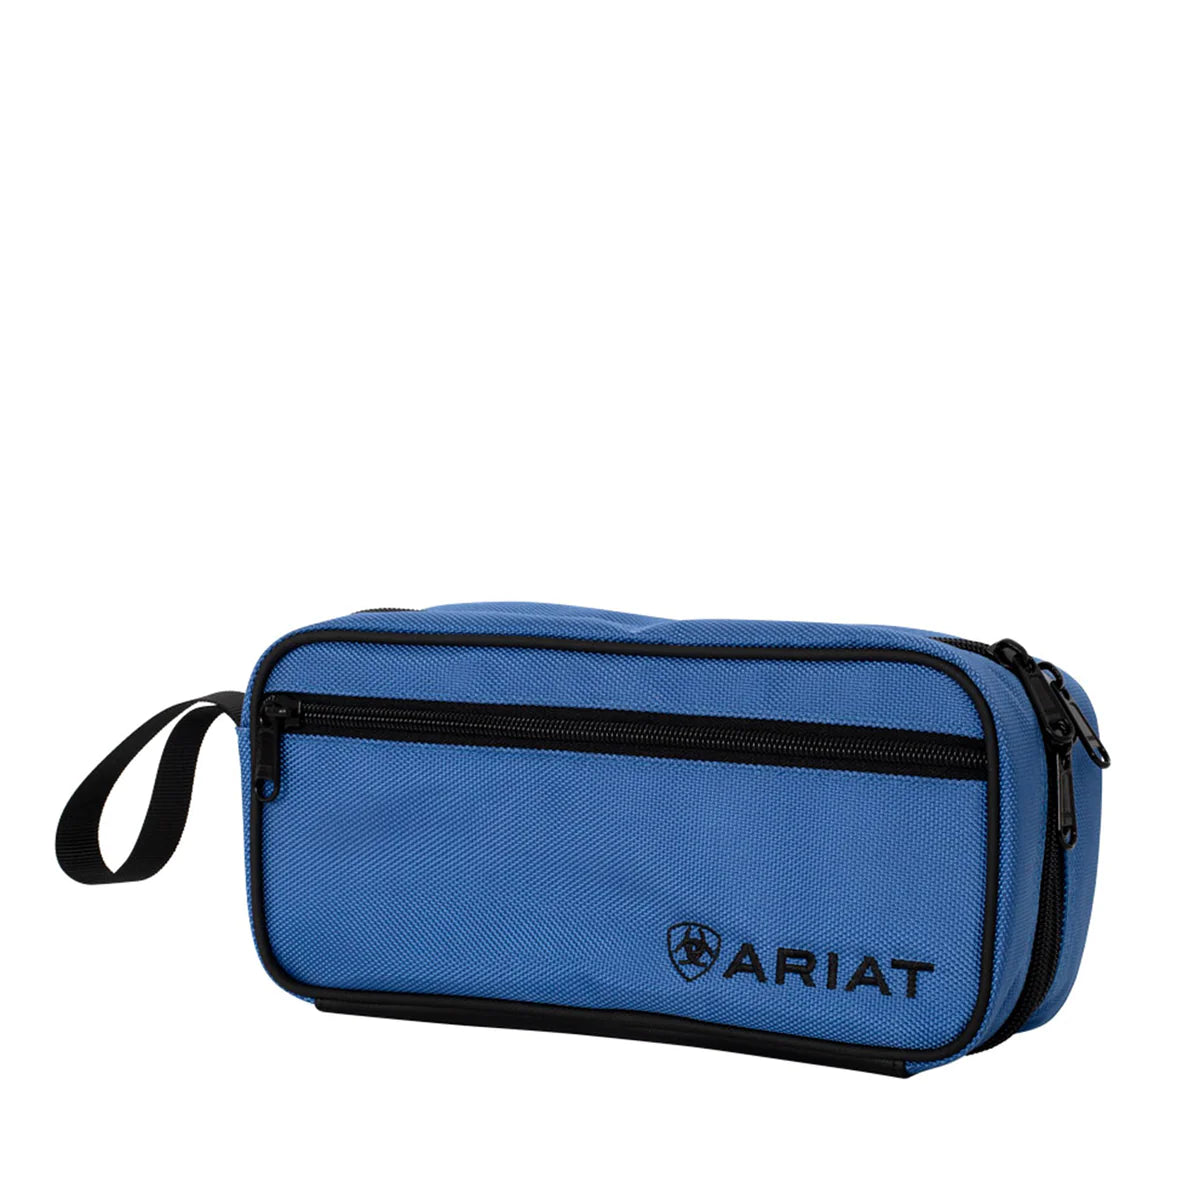 Ariat Unisex Toiletries Bag - Cobalt